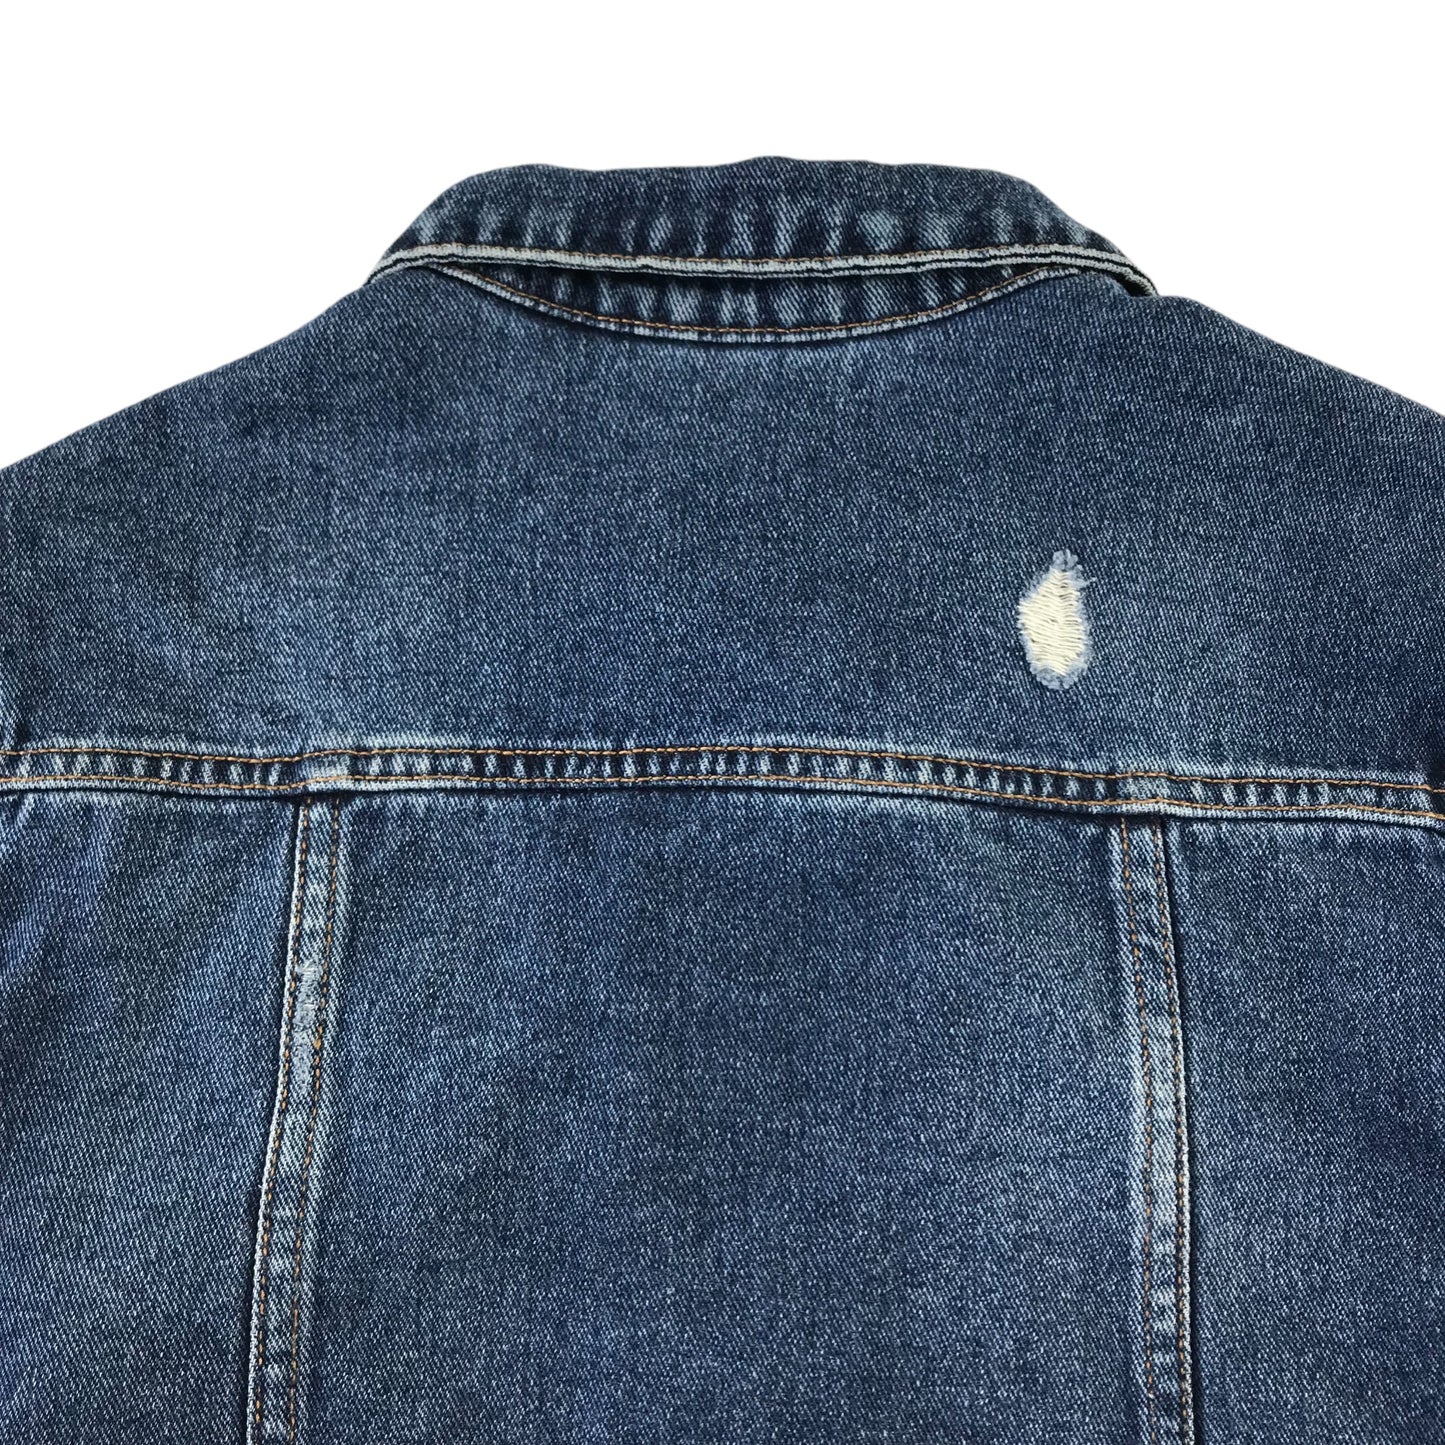 Matalan denim jacket 10-11 years blue cropped cotton